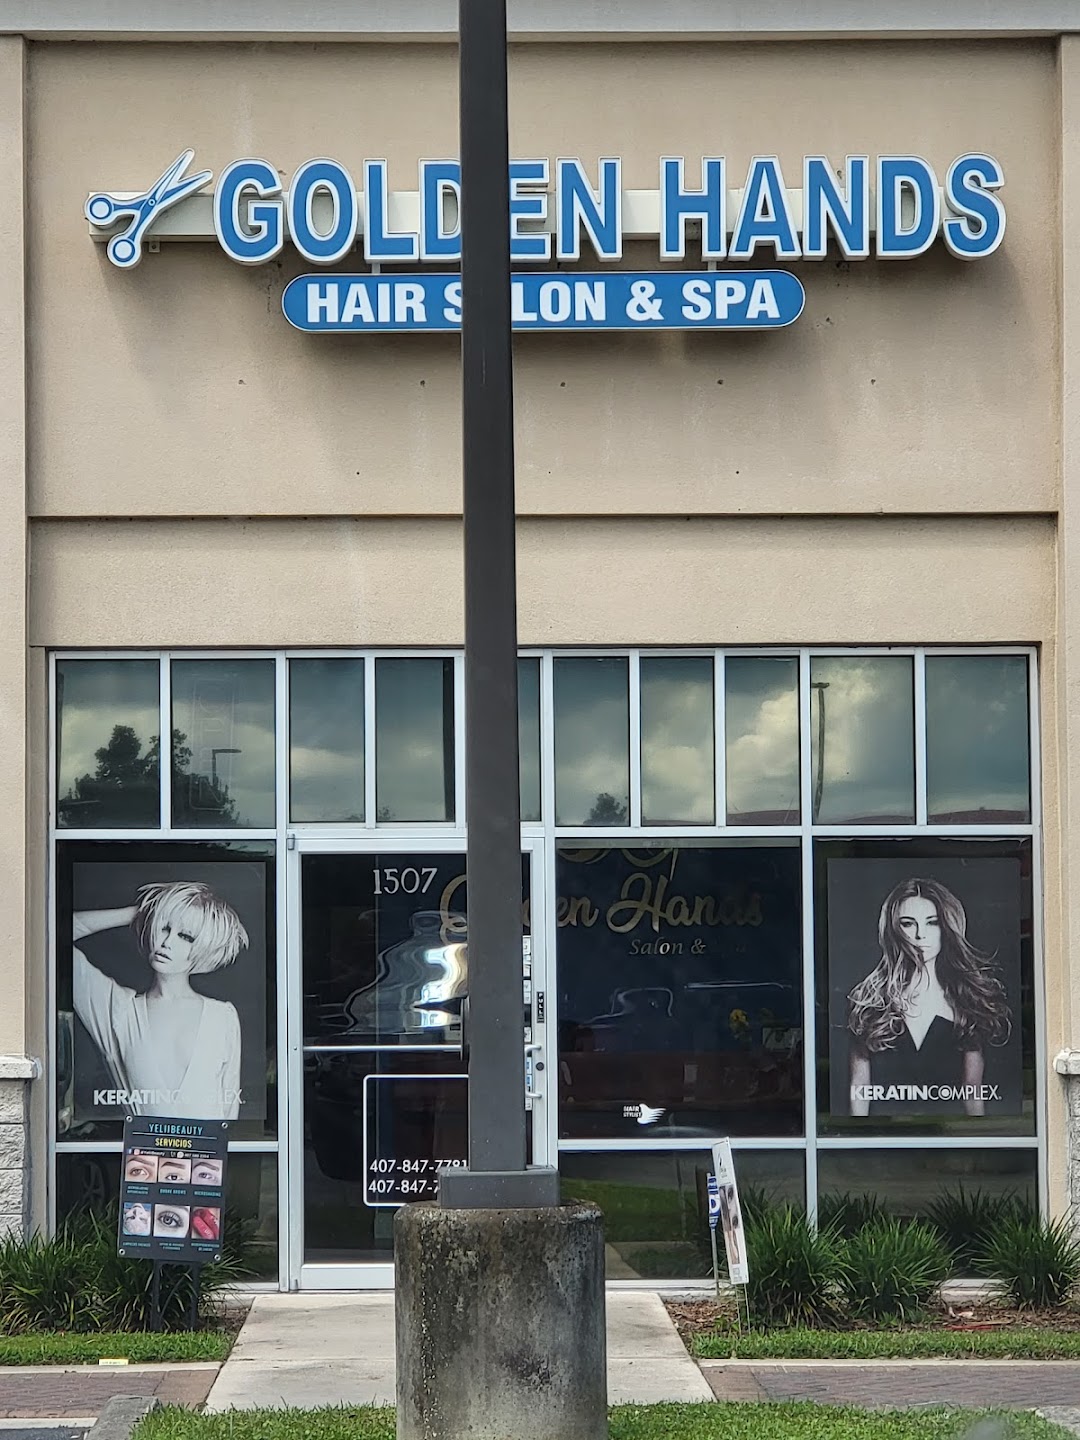 Golden Hands Salon & Spa Inc.